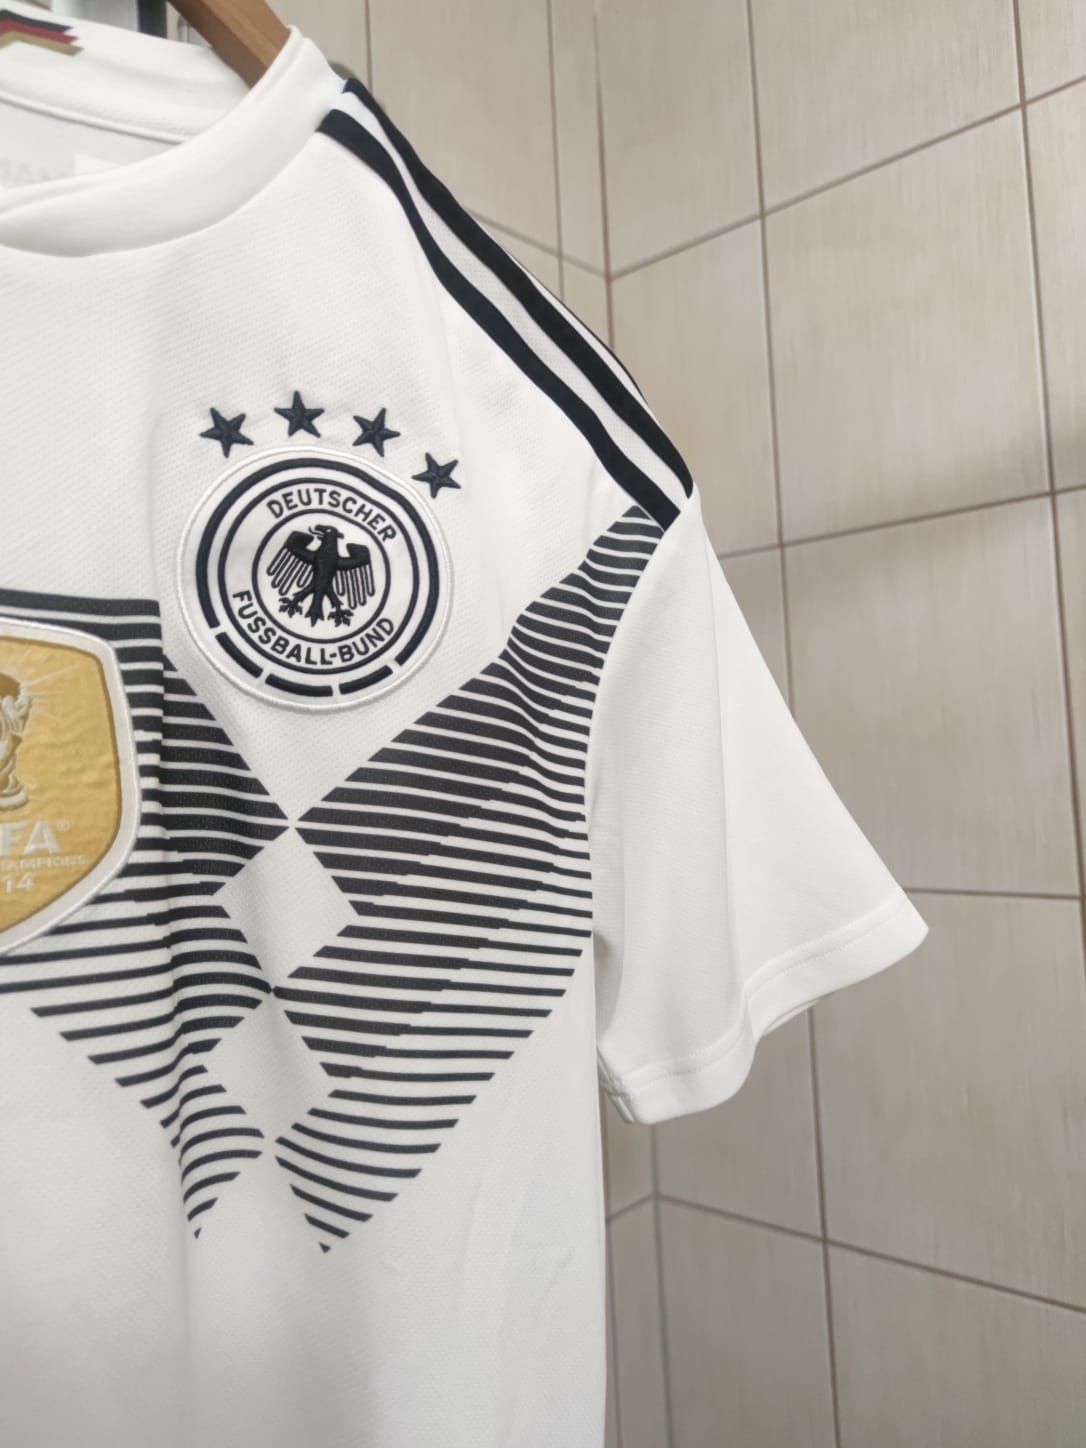 bluzka koszulka sportowa Jersey piłkarska adidas germany M niemiecka t